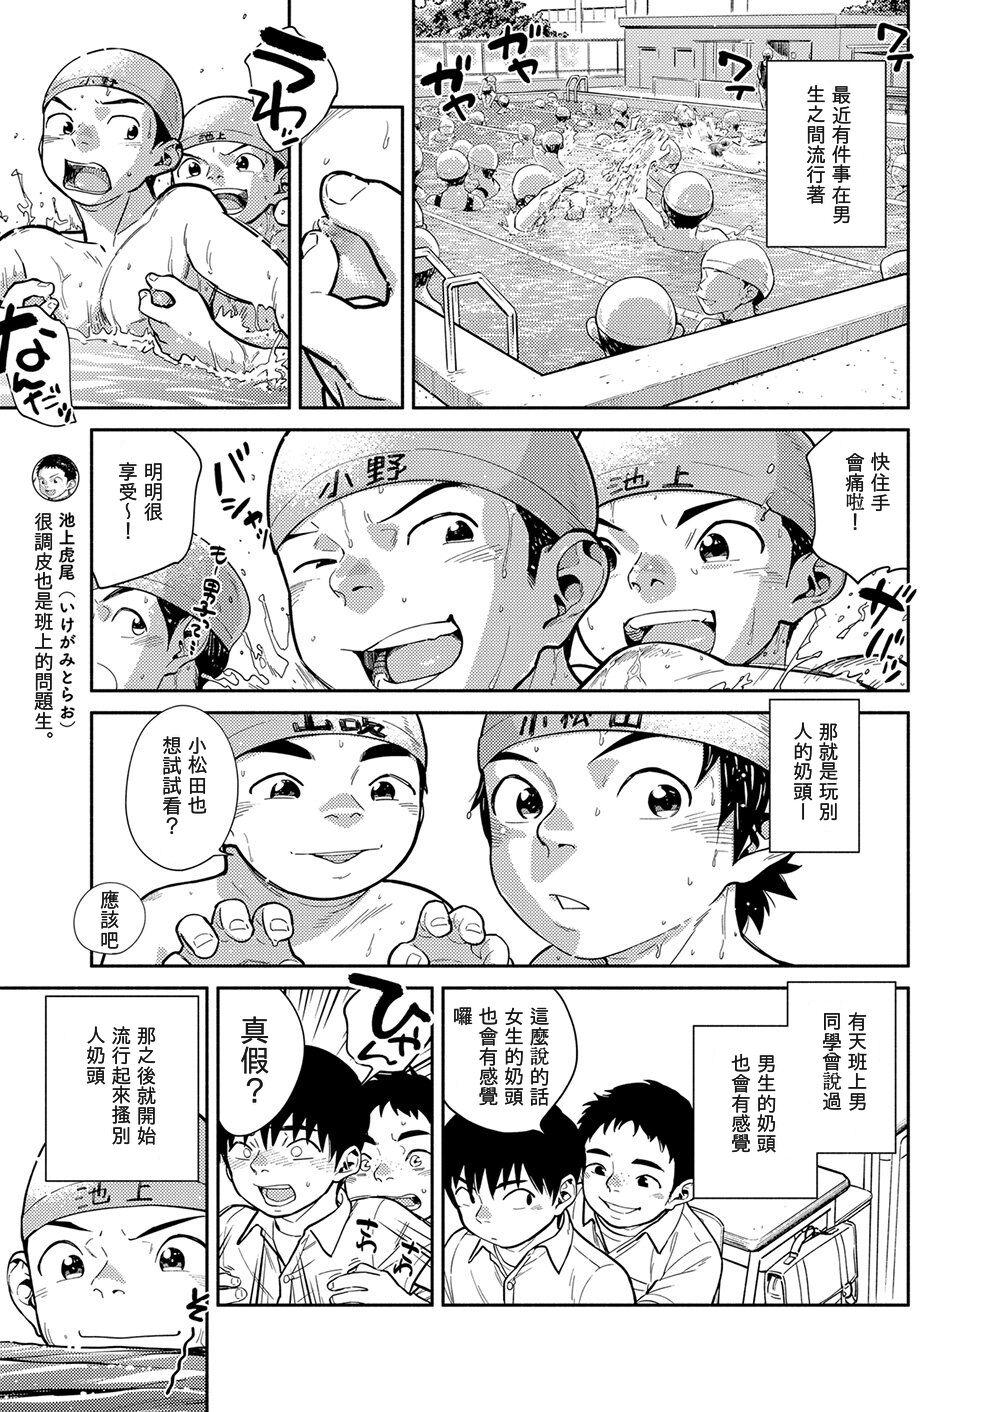 Pussylick Manga Shounen Zoom Vol. 29 - Original Students - Page 9